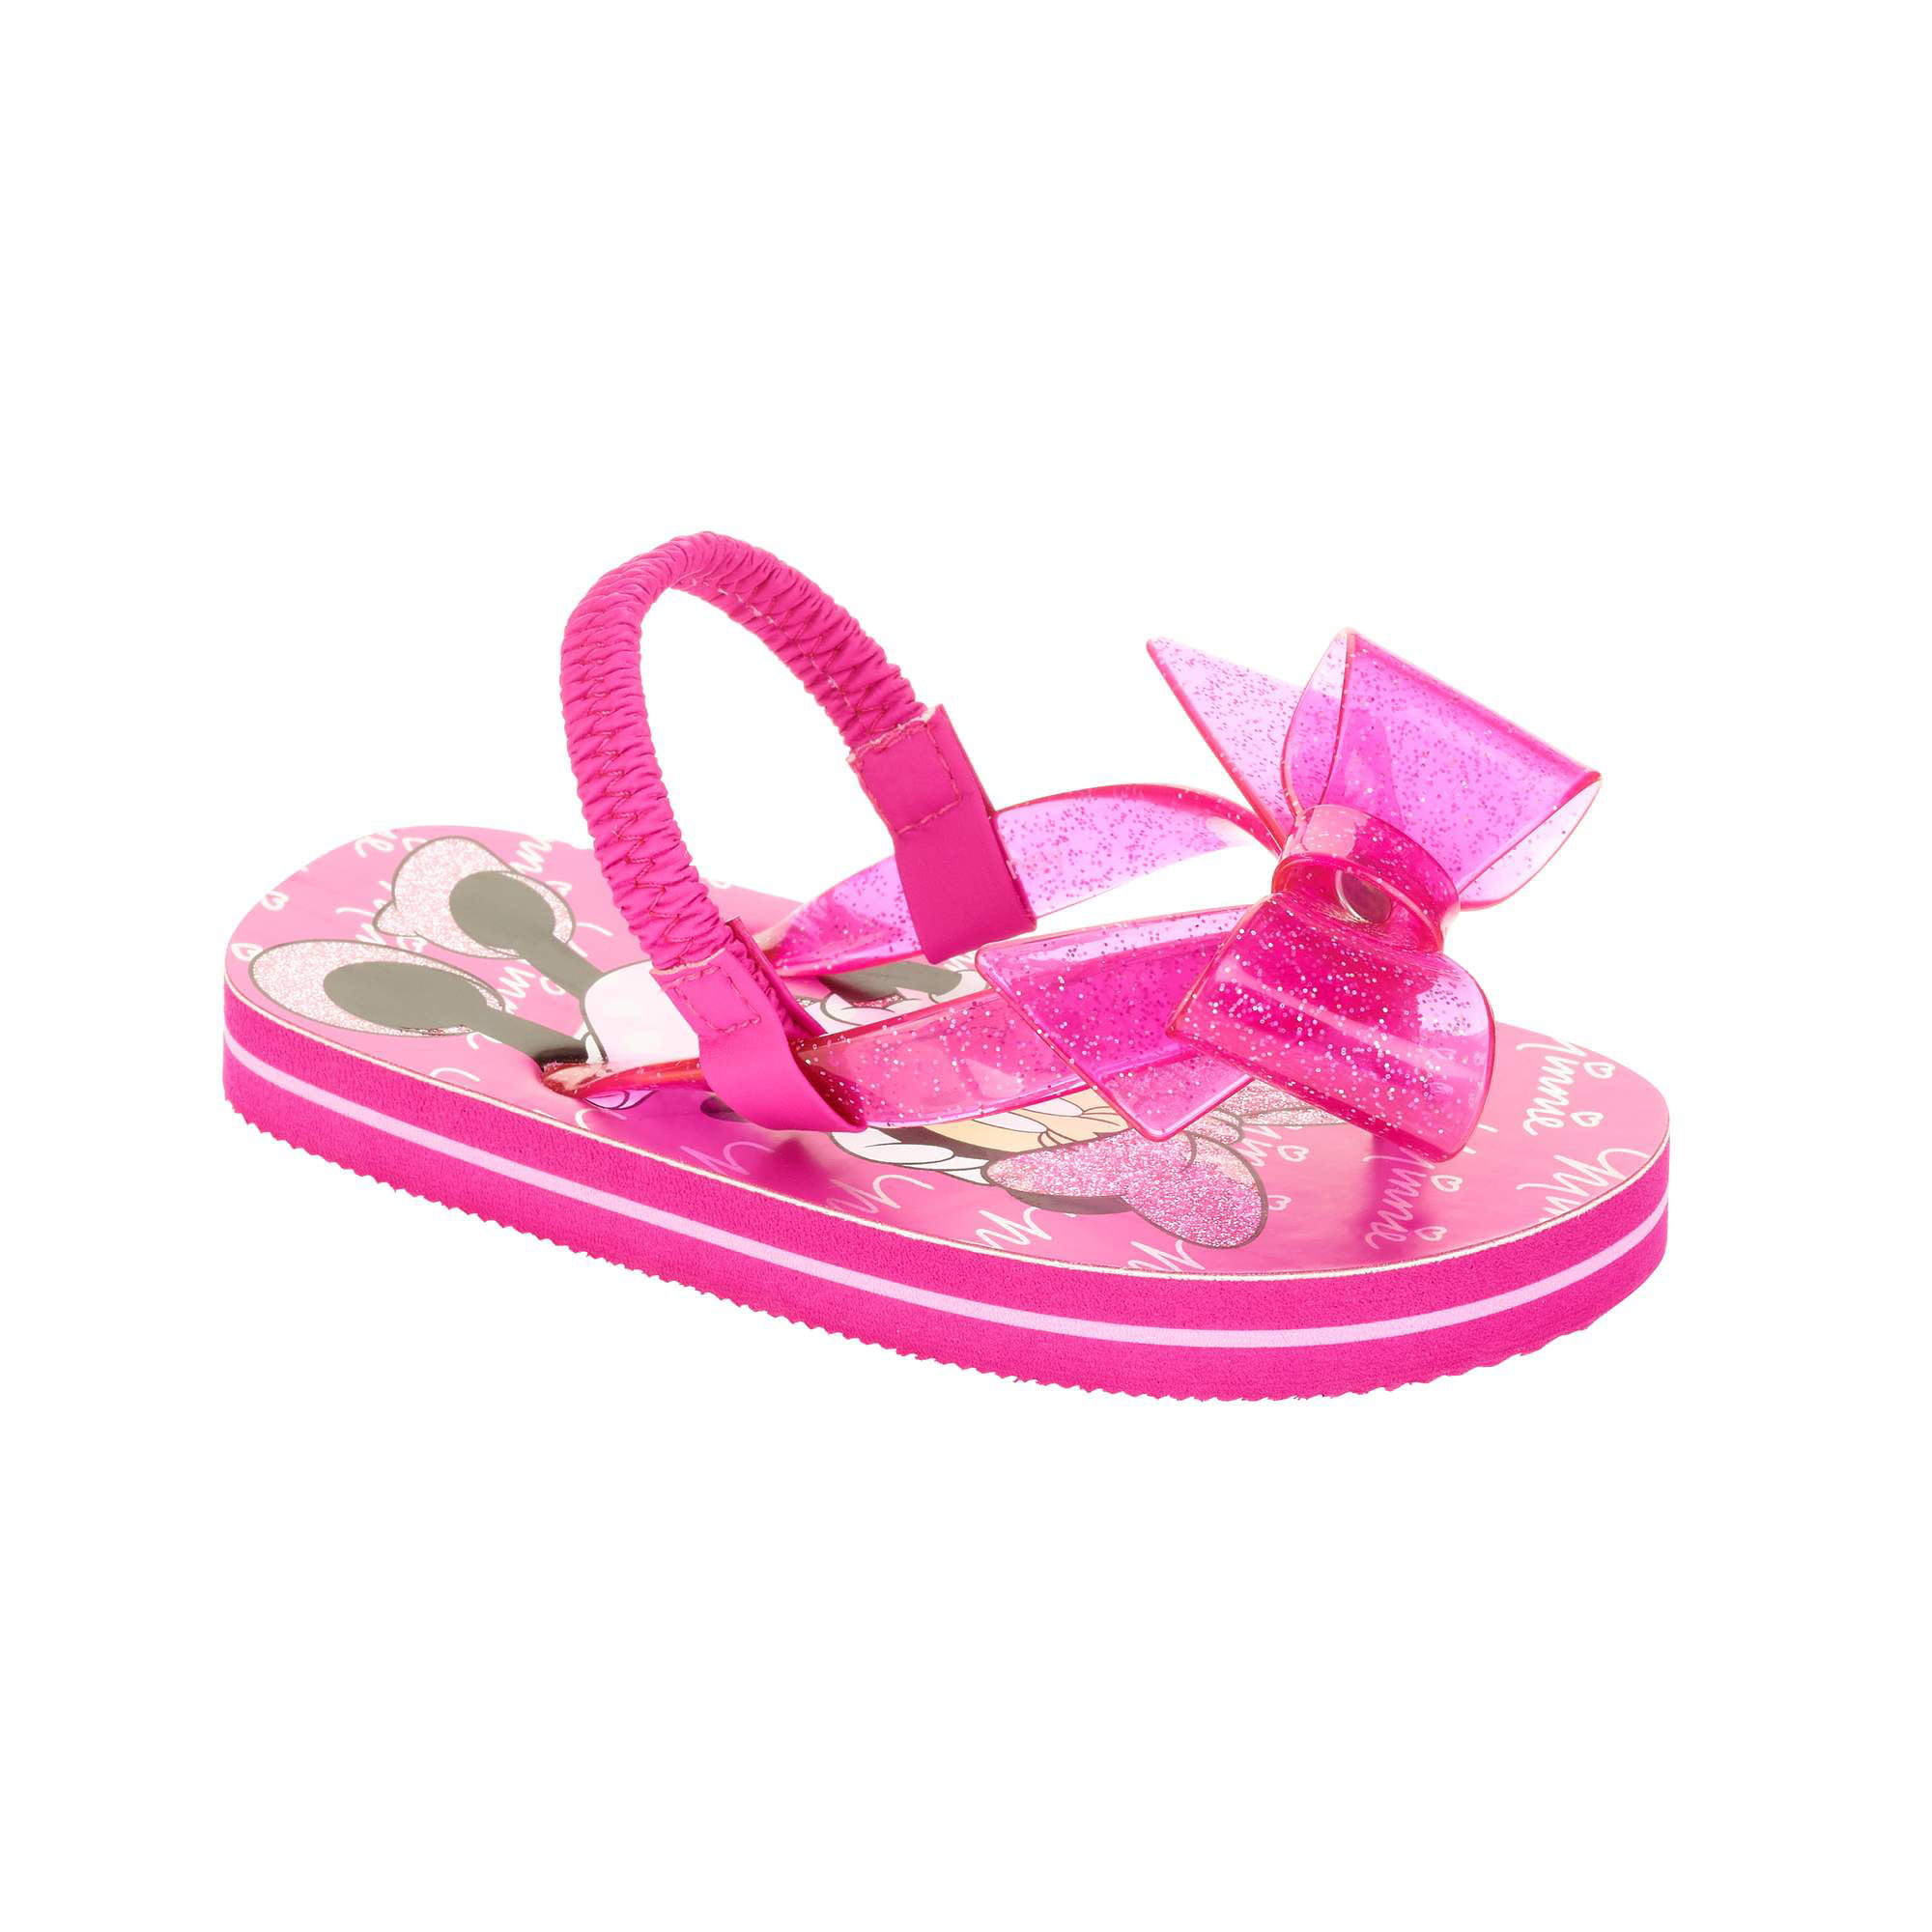 Minnie Mouse - Toddler Girls' Beach Flip Flop - Walmart.com - Walmart.com